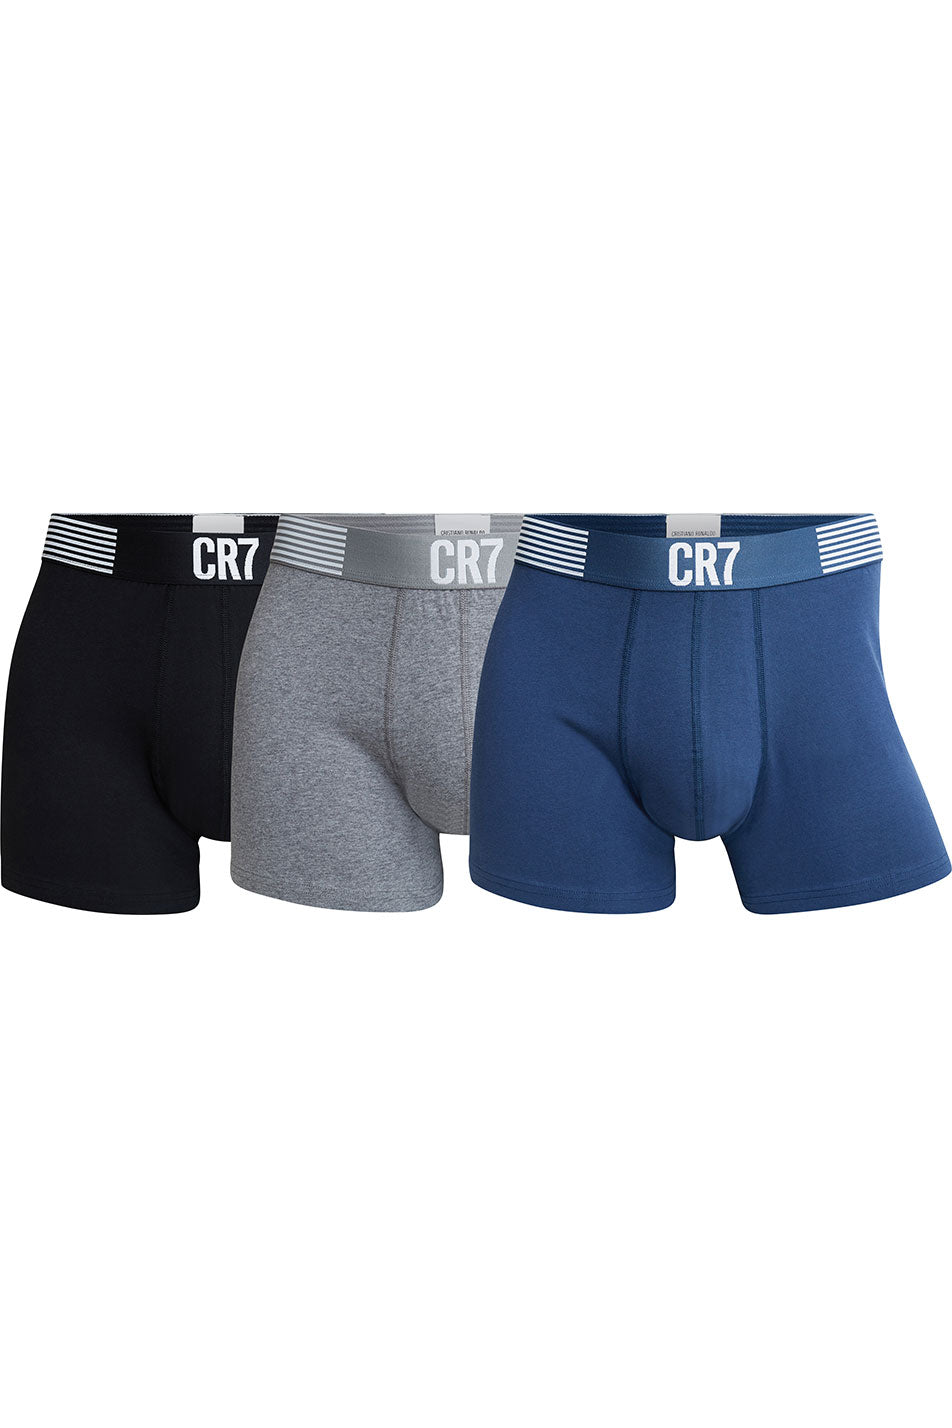 CR7 3 Pack Men's Cotton Trunks